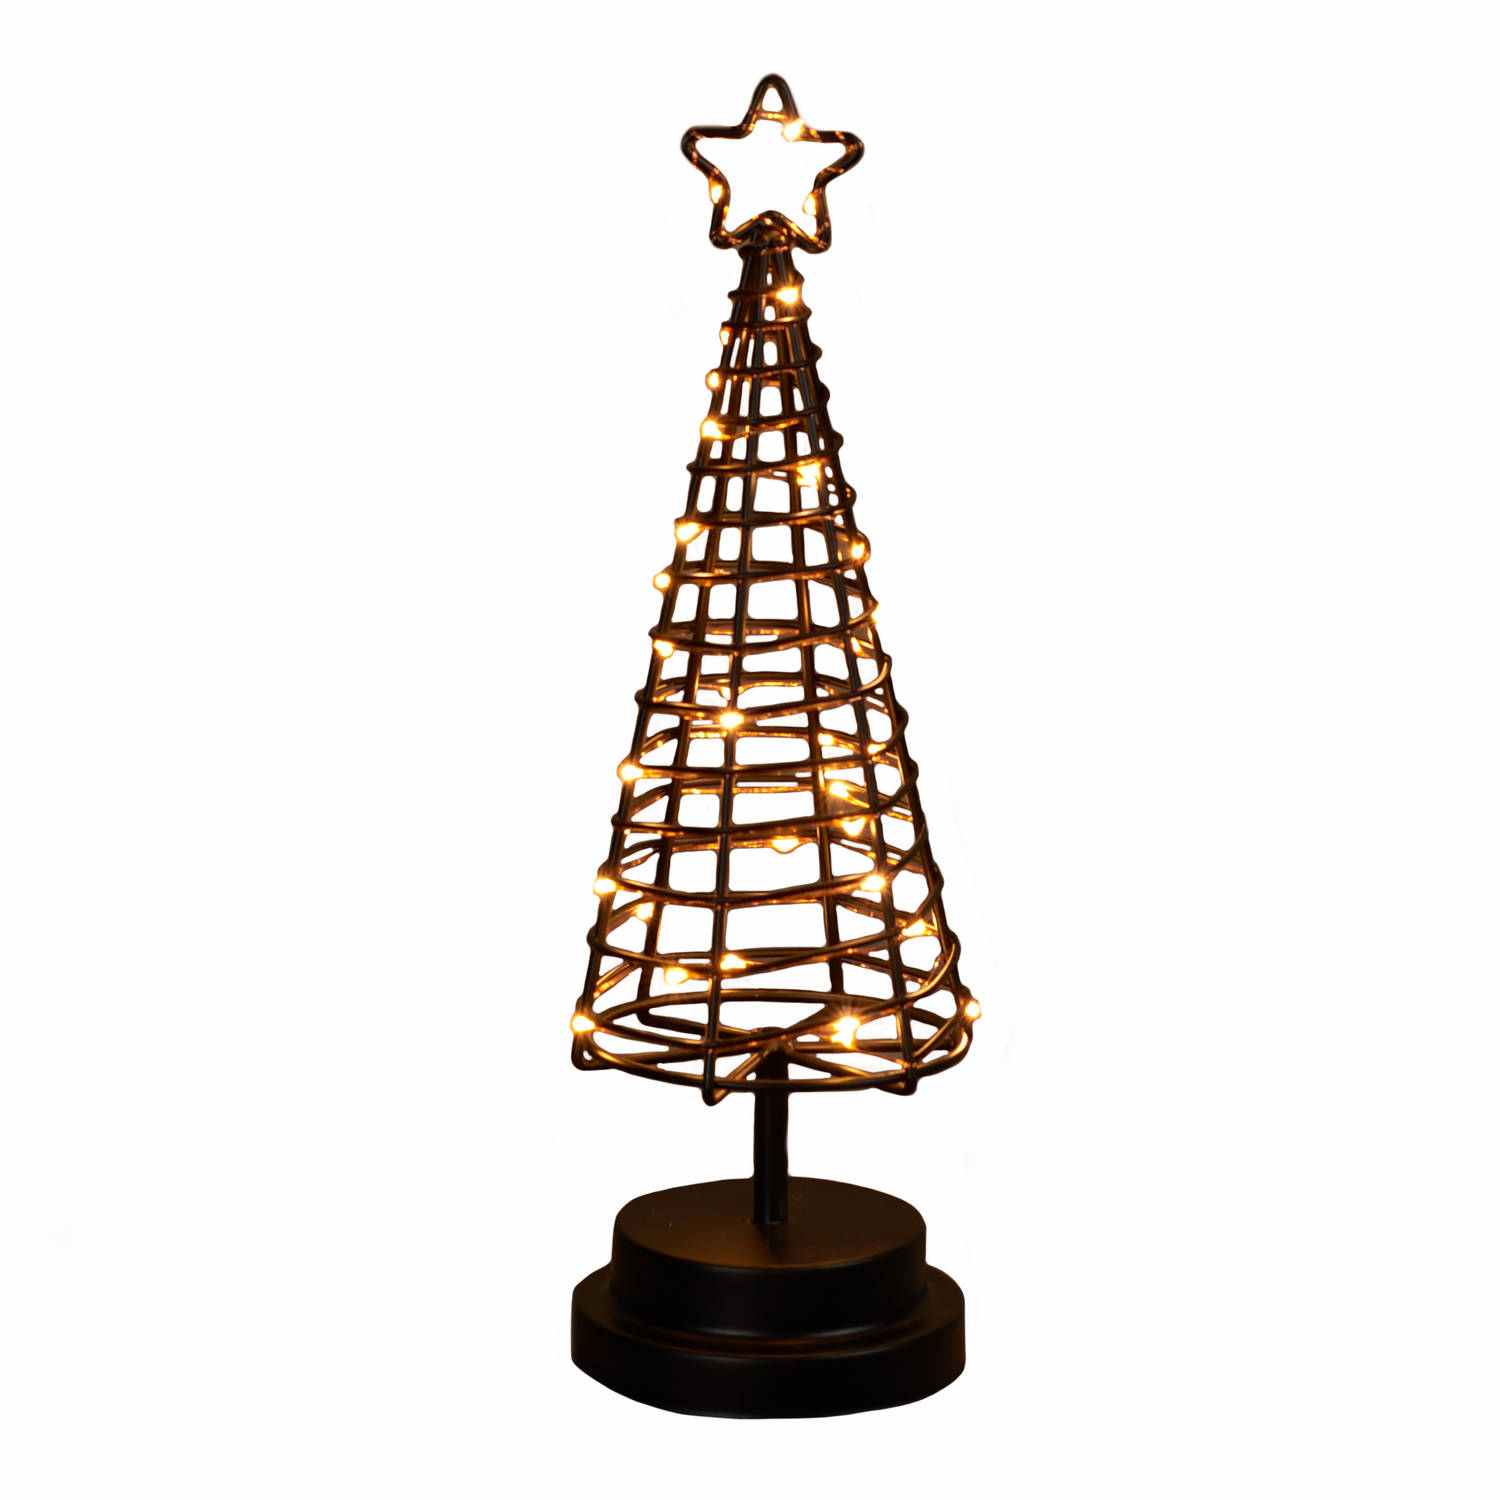 Verlichte figuren zwarte 3D lichtboompje/metalen boom/kerstboompje met 30 led lichtjes 30 cm - kerstverlichting figuur